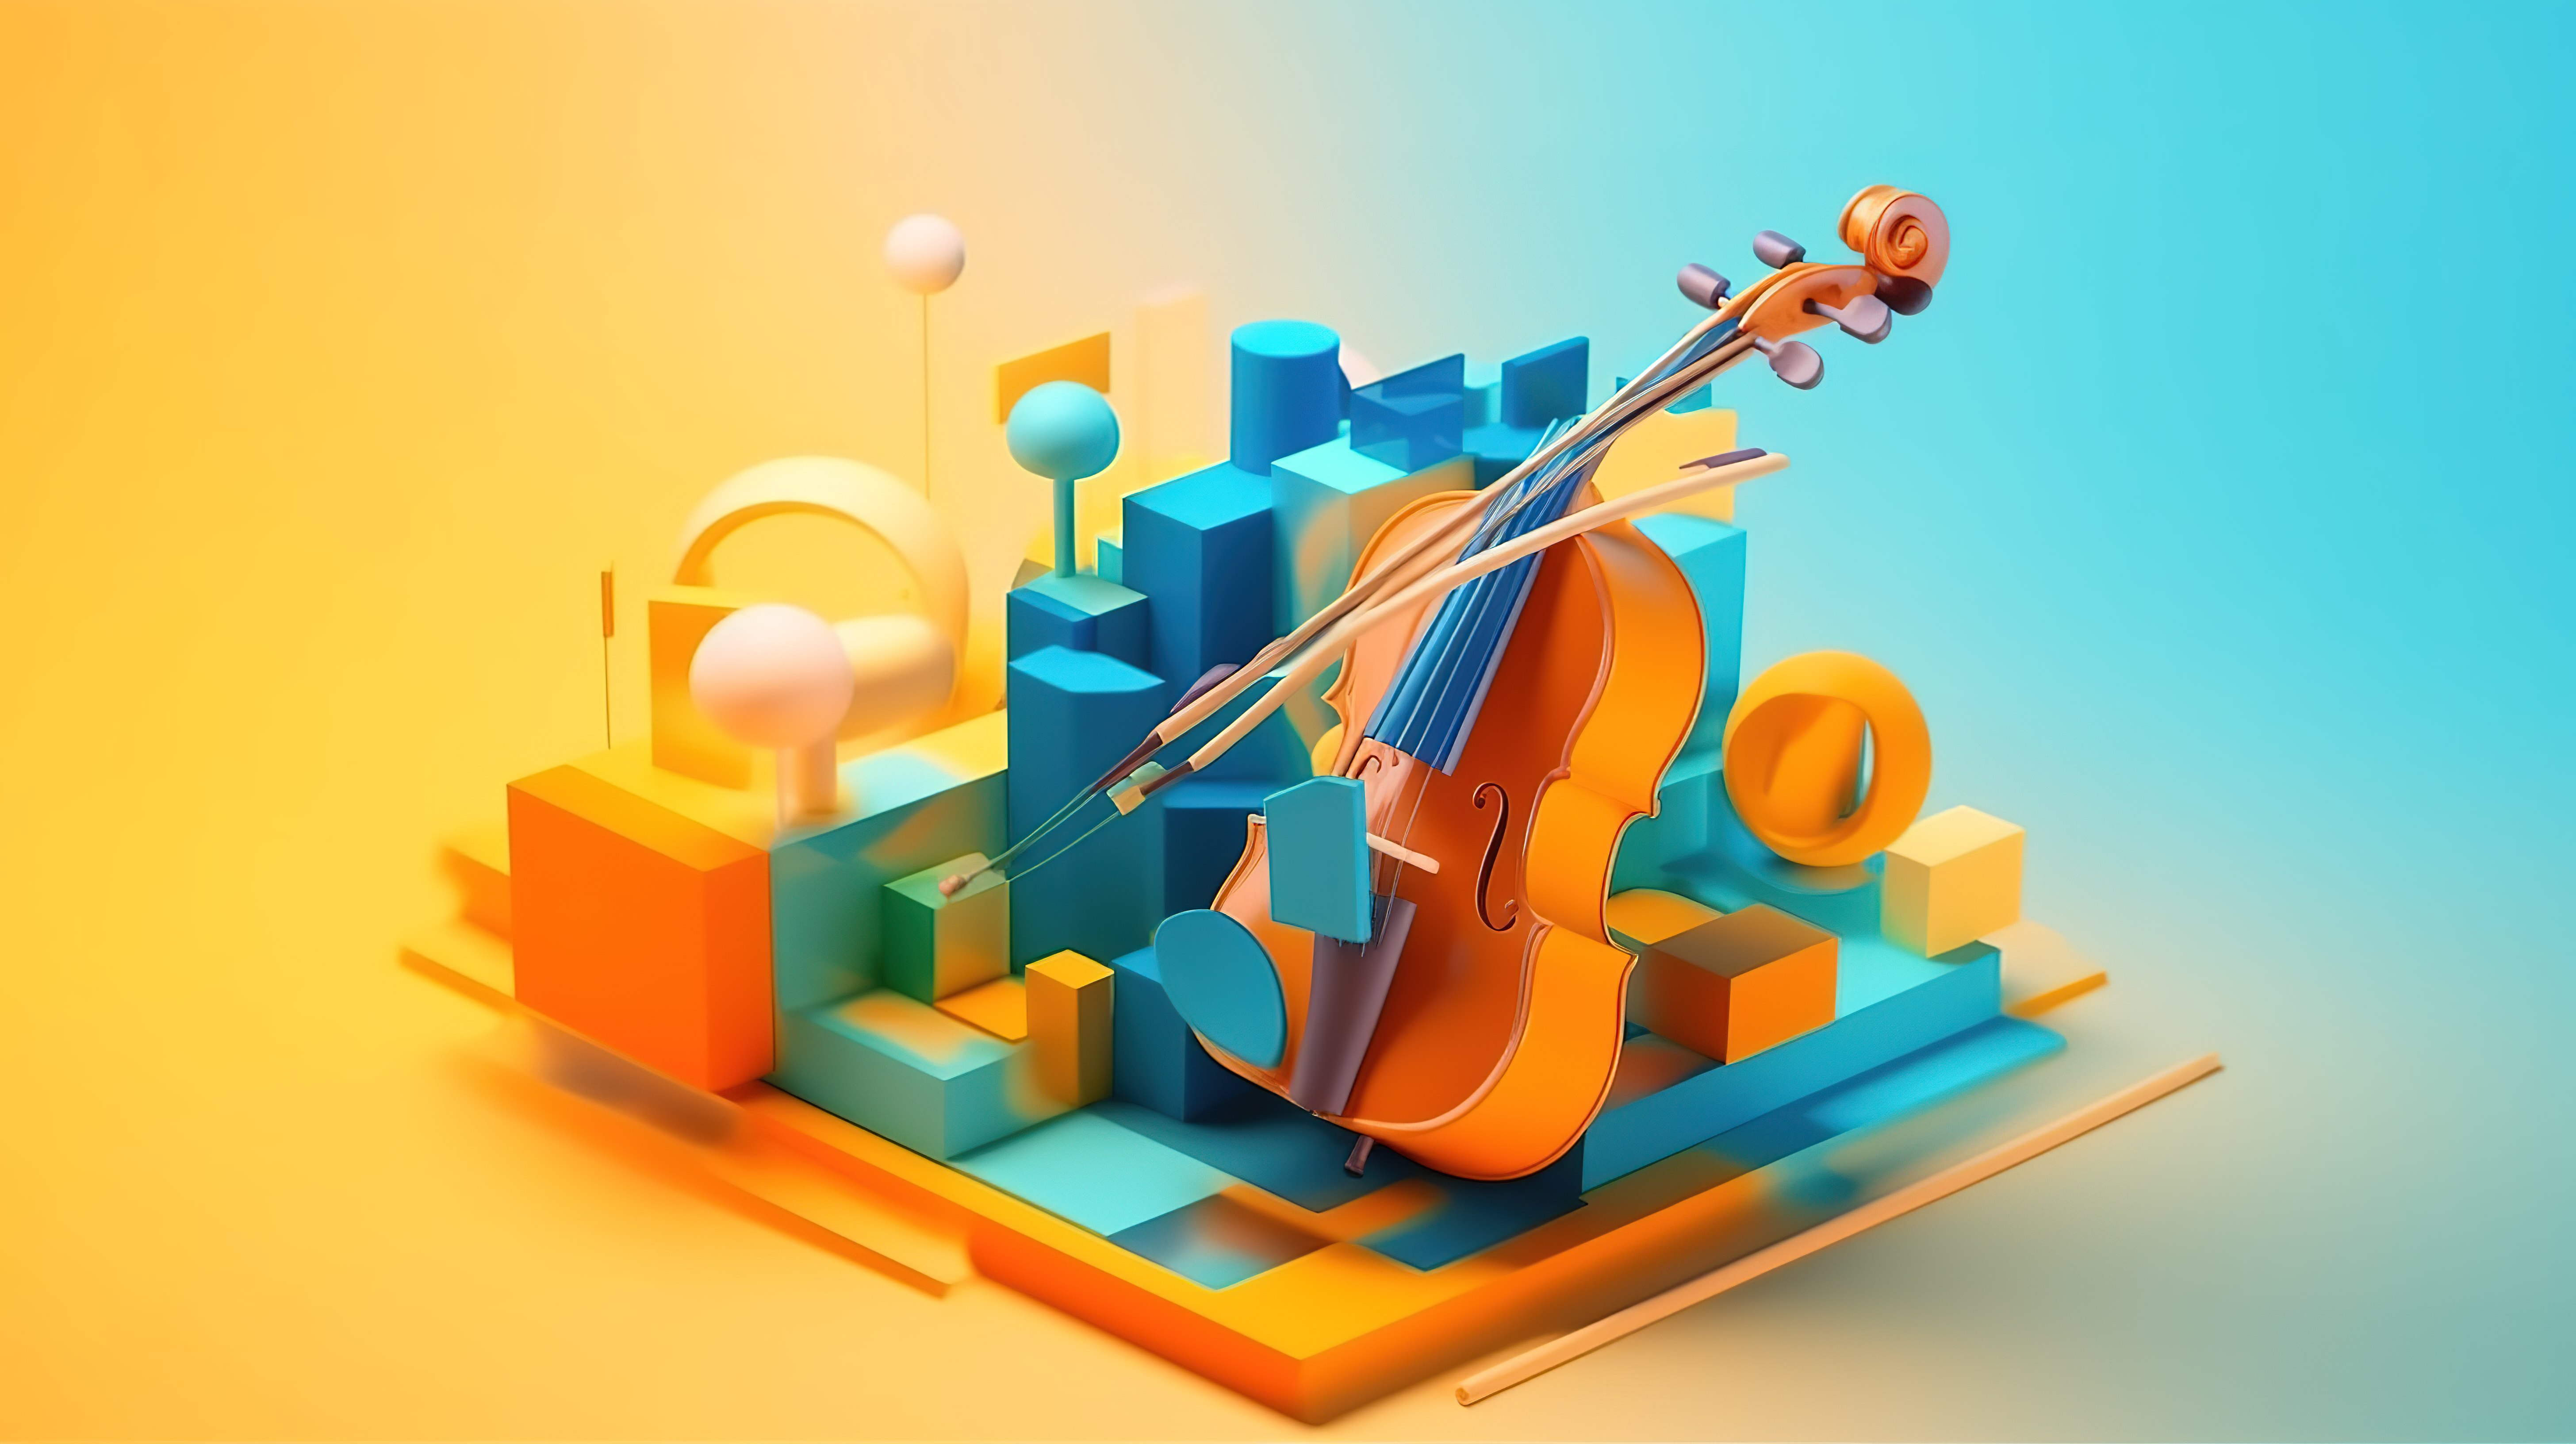 1 橙色和蓝色色调的抽象几何平台描绘小提琴和其他乐器 3D 渲染概念图片